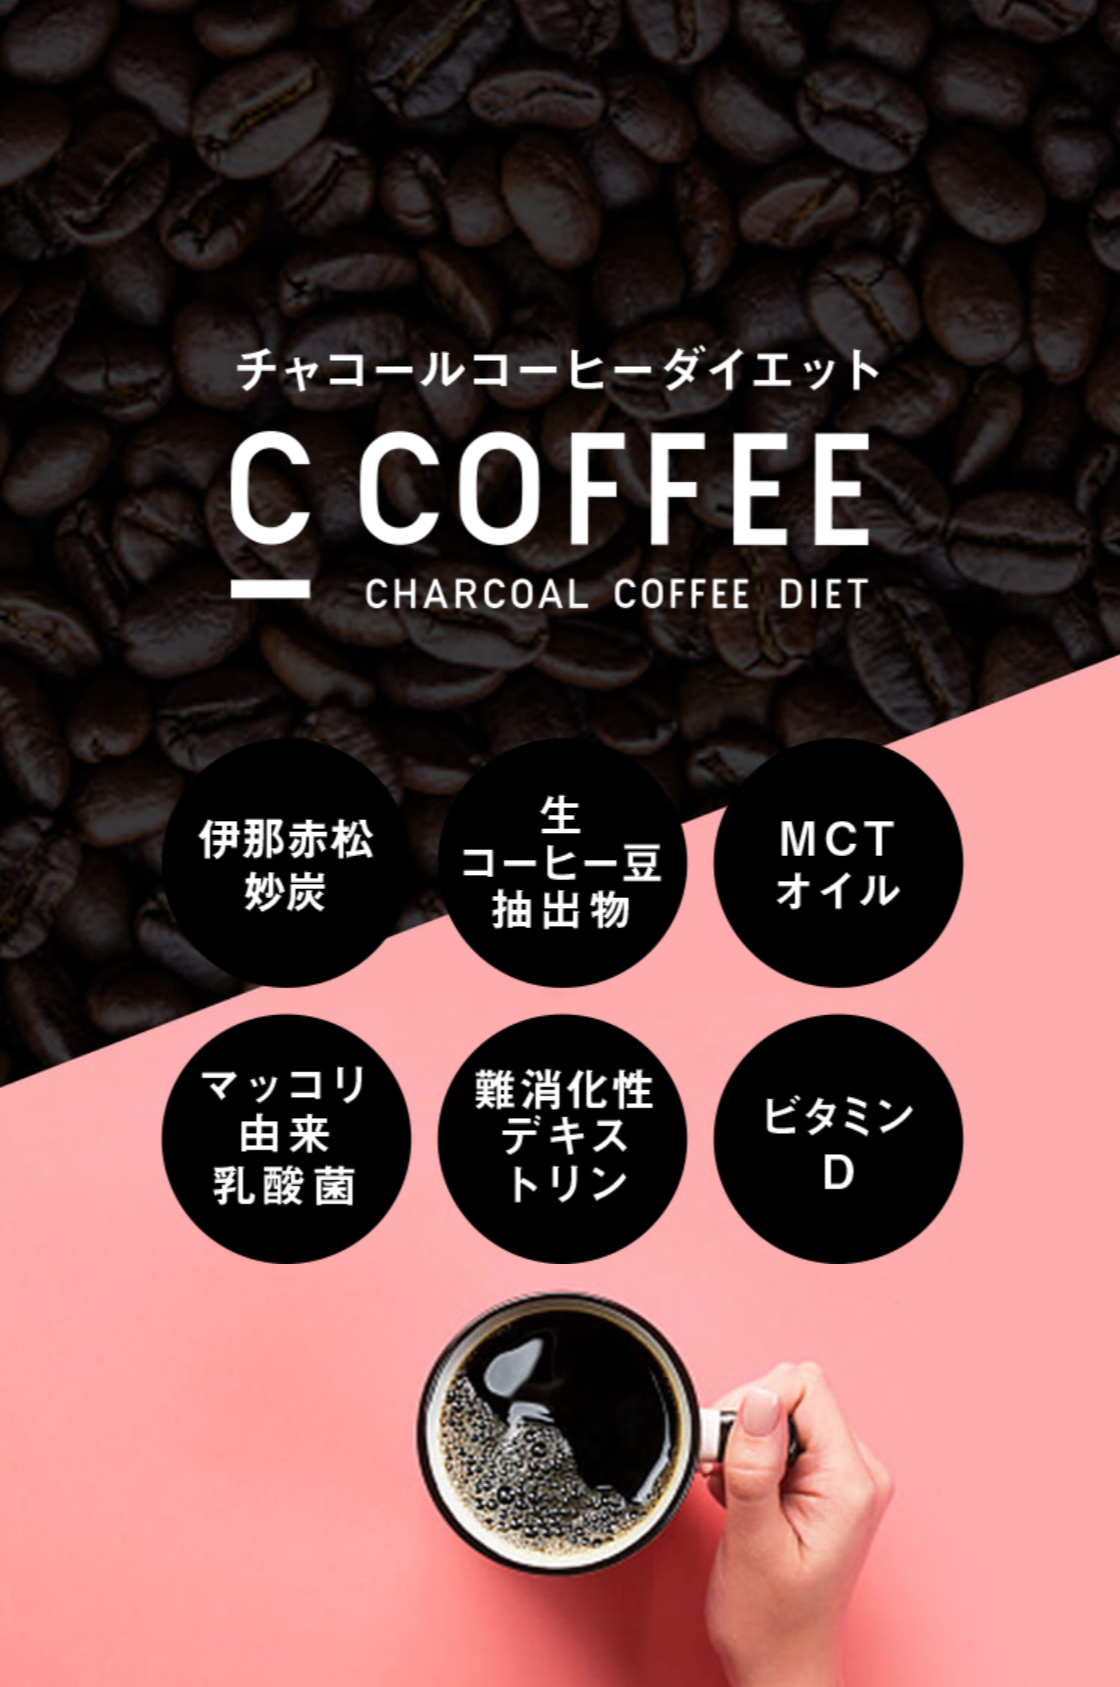 【C COFFEE】チャコールコーヒーダイエット